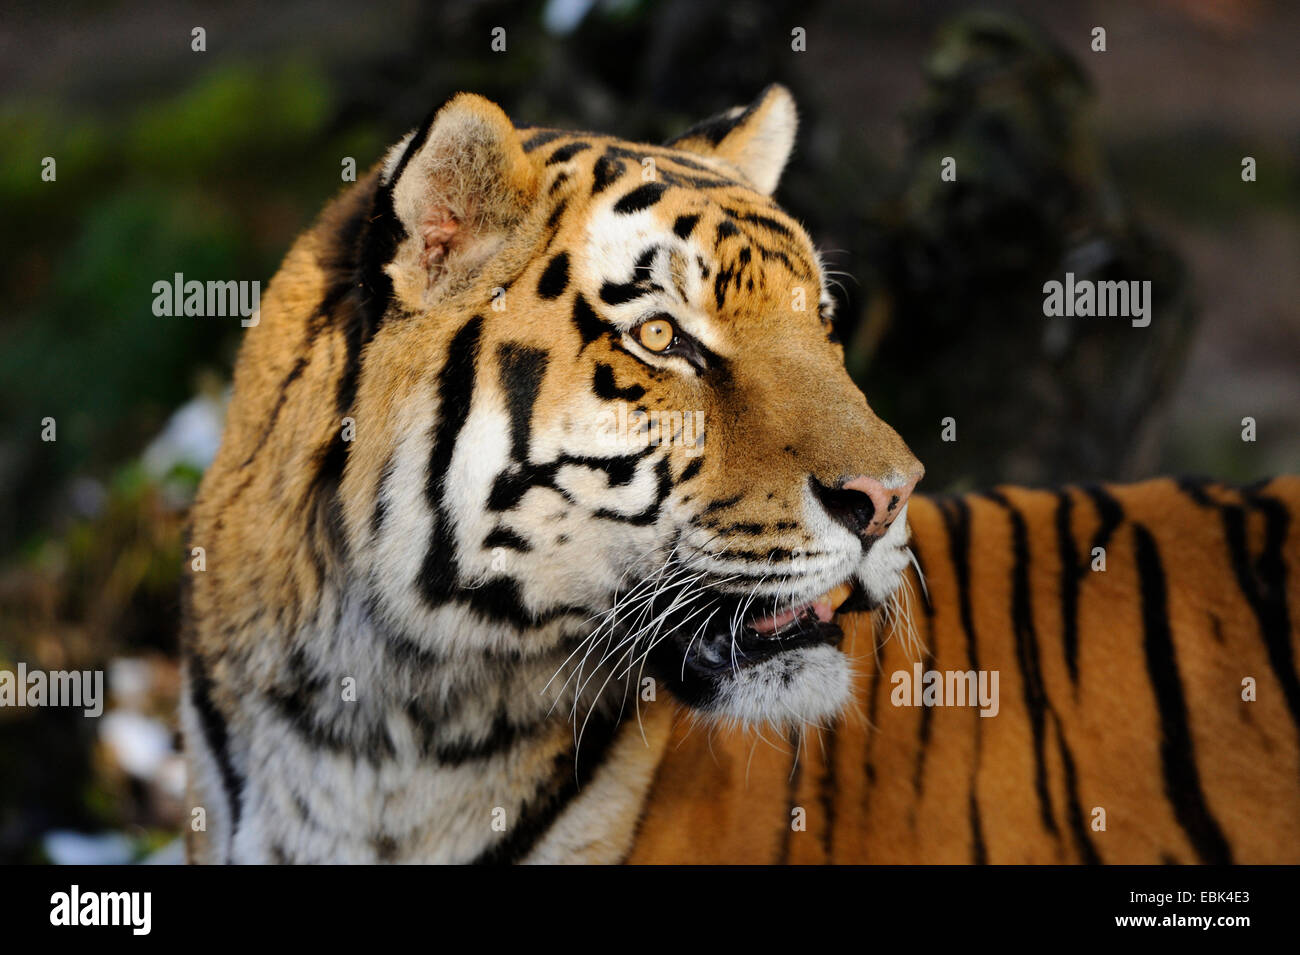 Siberian tiger, Amurian tiger (Panthera tigris altaica), portait Stock Photo